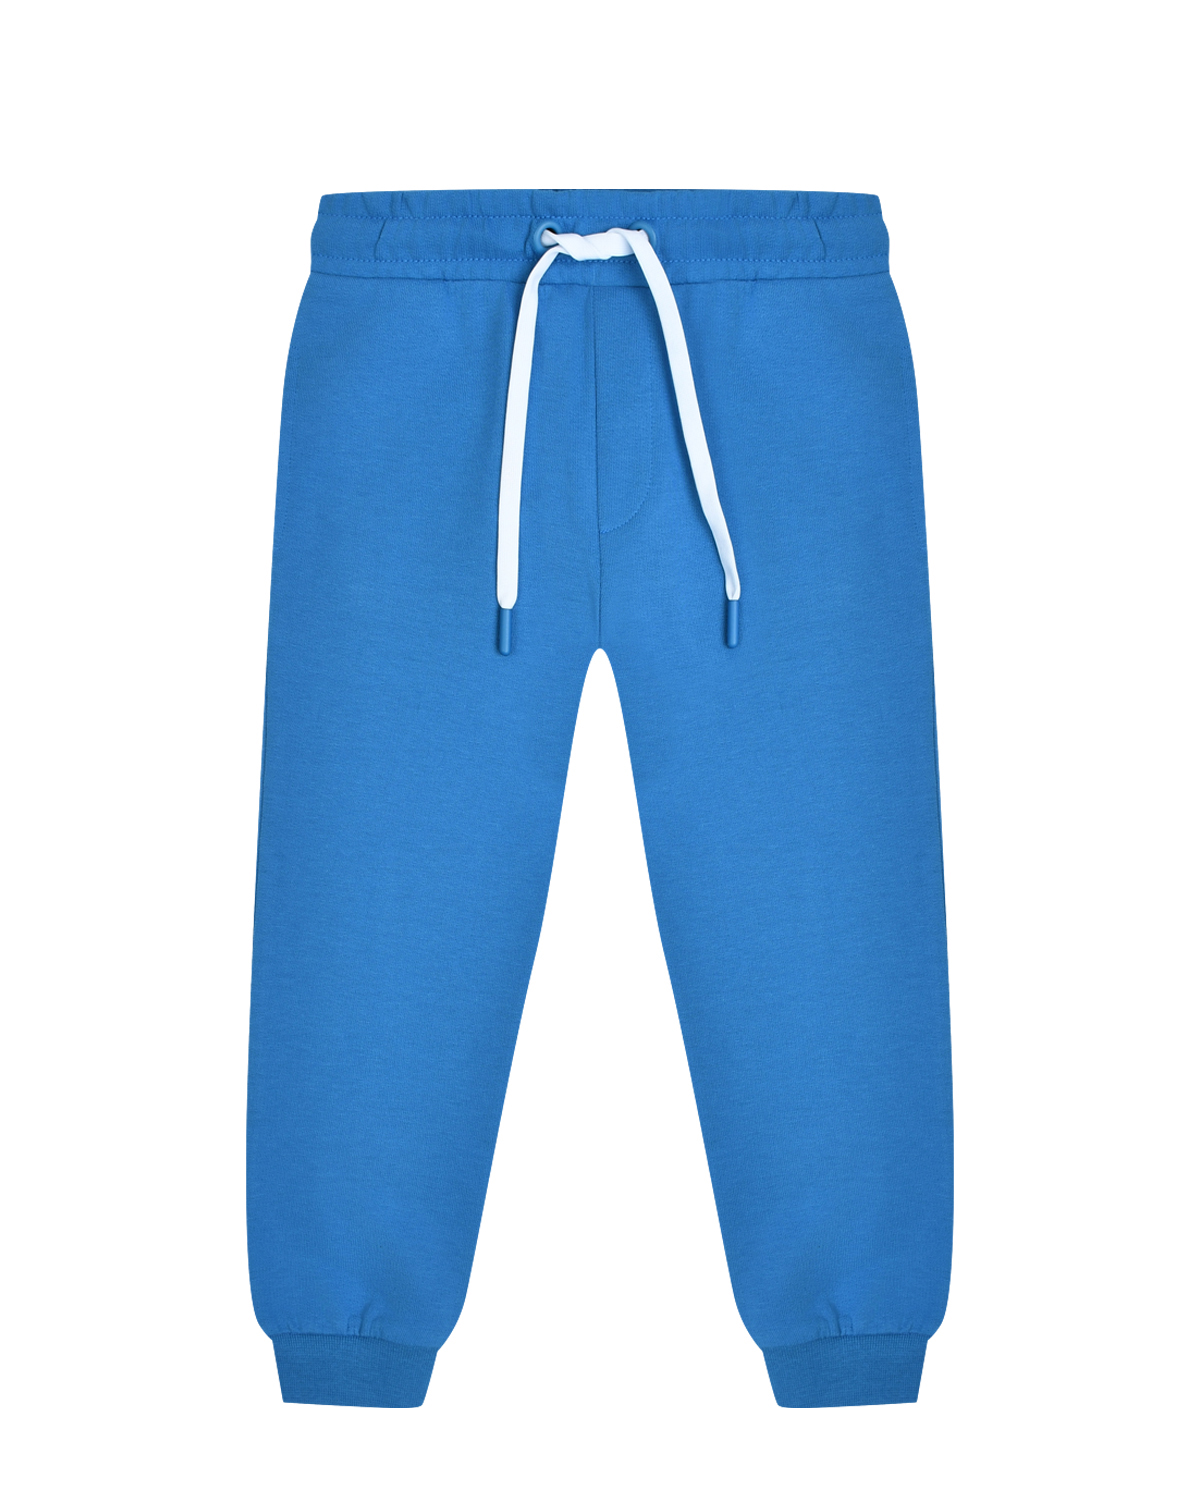 Спортивные брюки с поясом на кулиске, голубые Bikkembergs, размер 164, цвет нет цвета